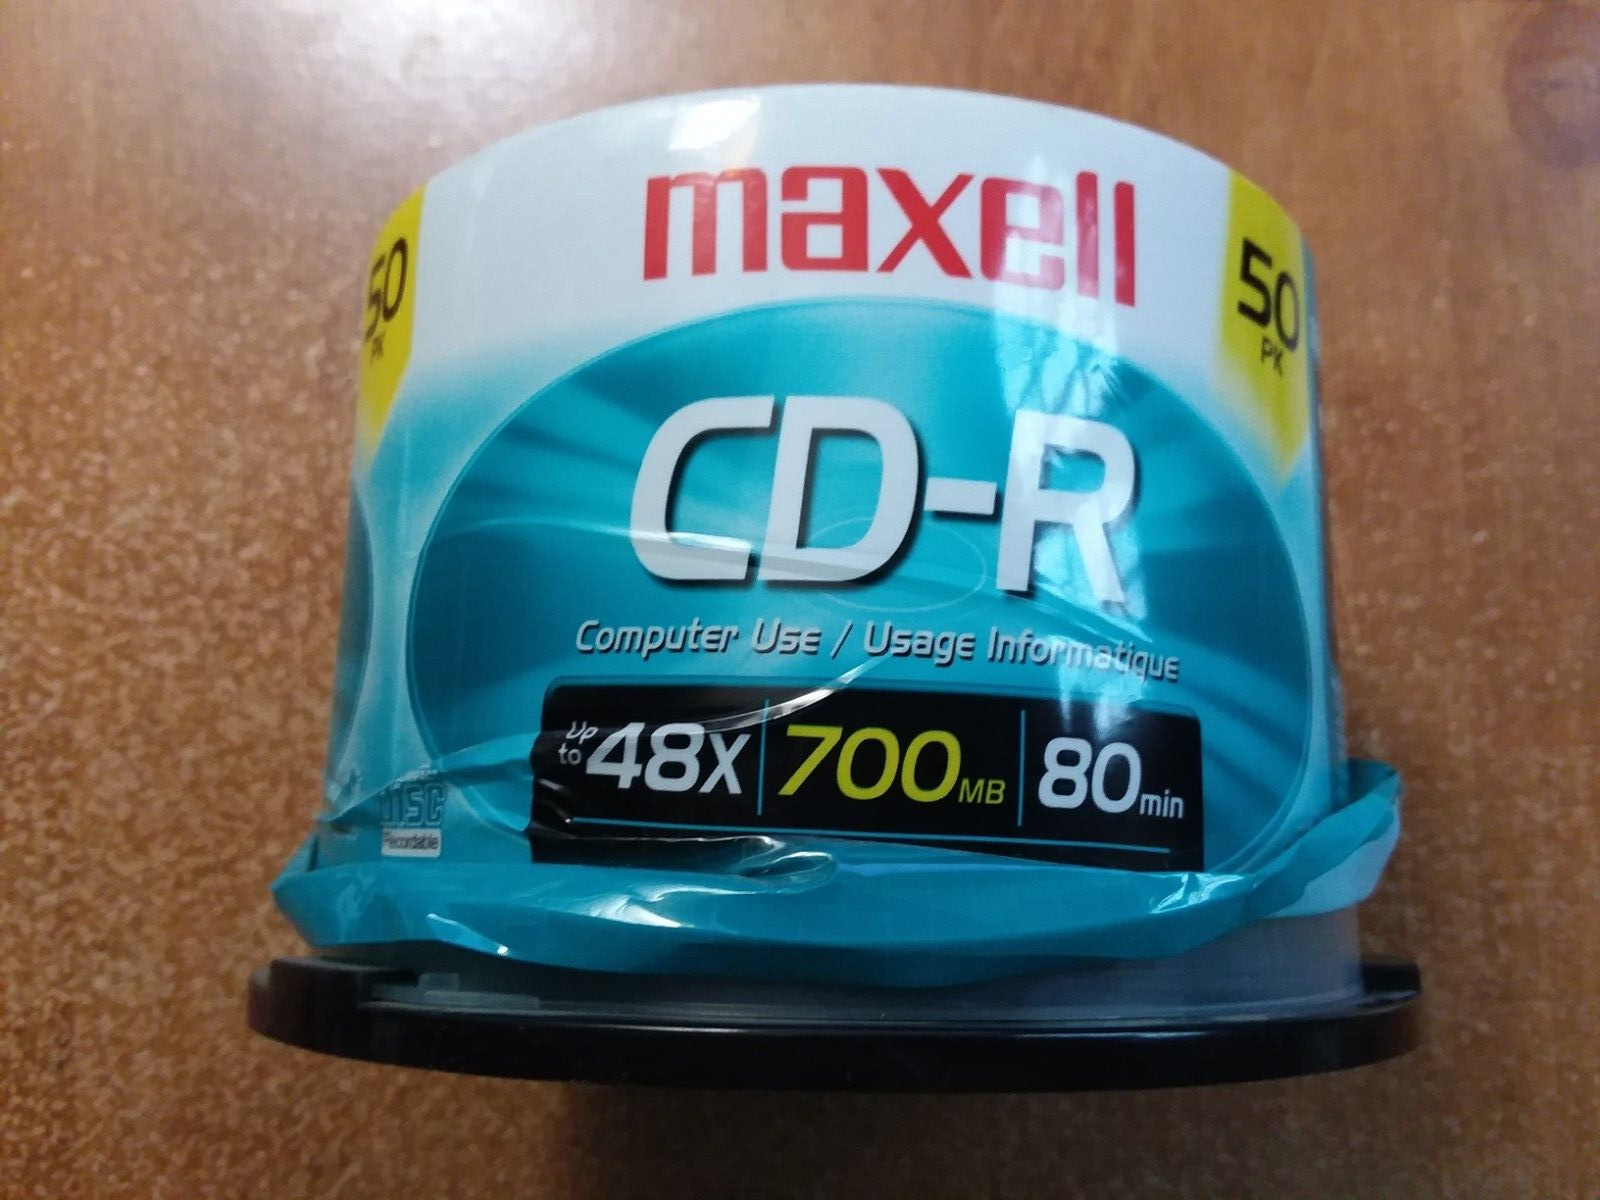 Maxell CD-R 48X 700 MB 80 min New 28pcs